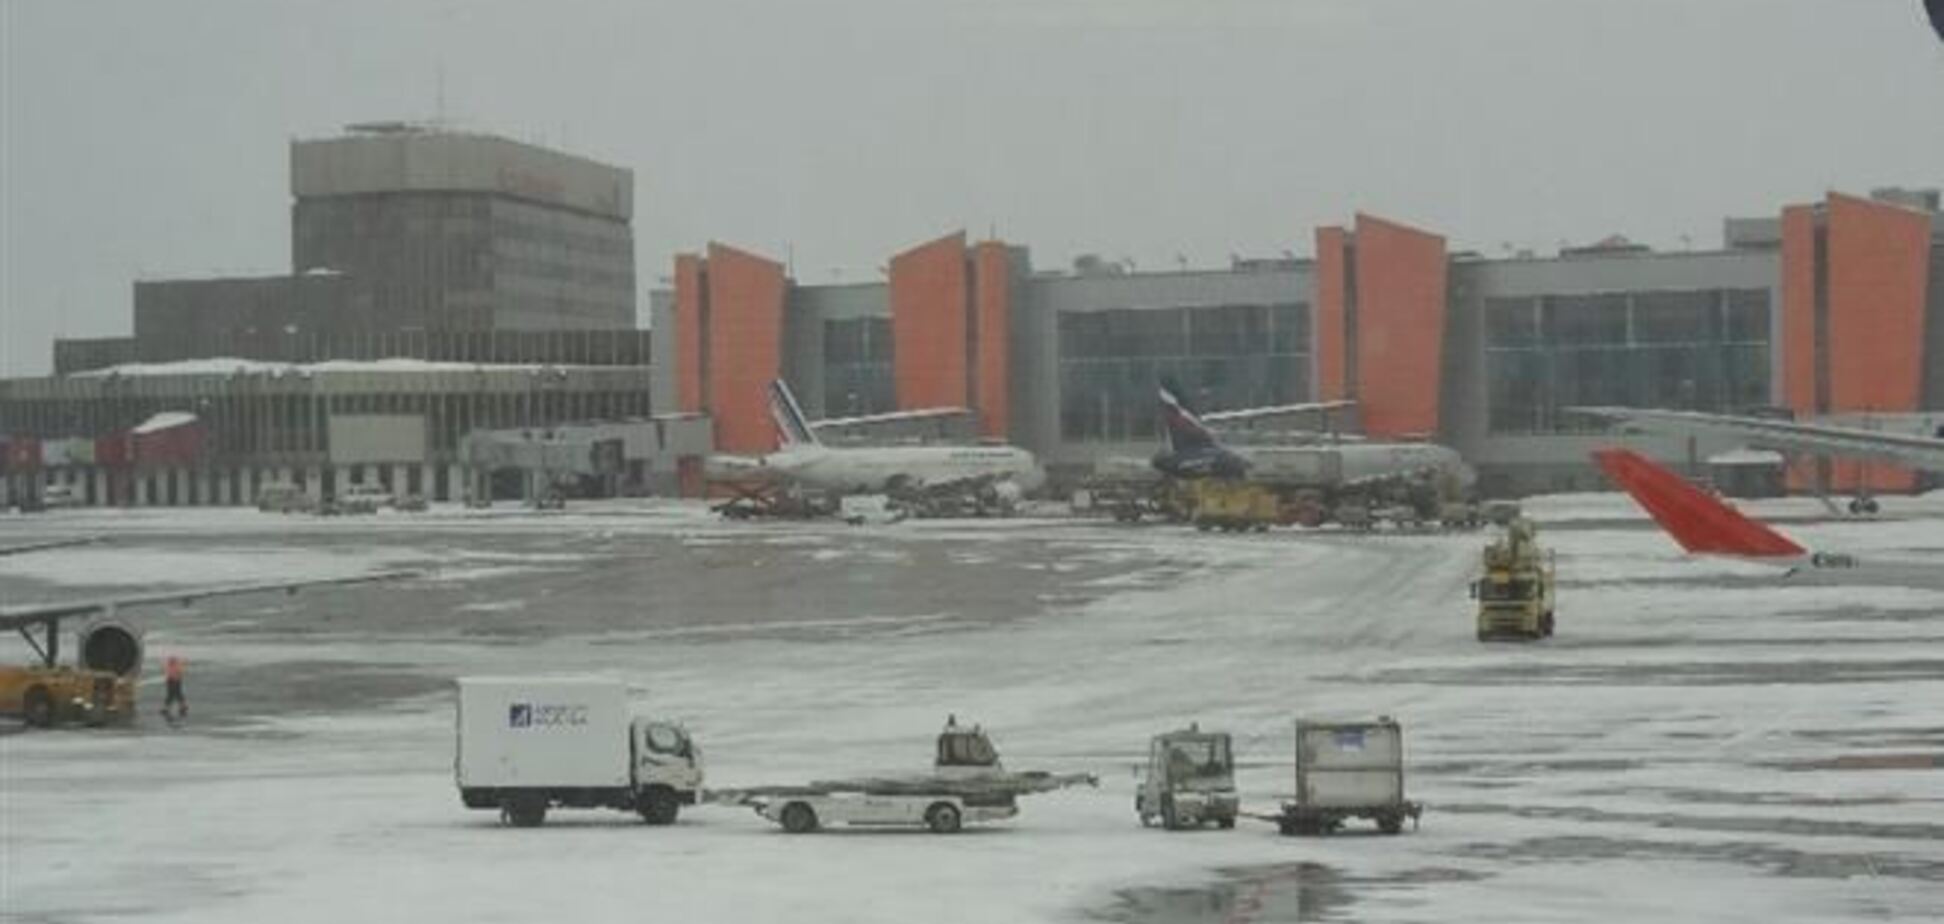 Рейси в аеропорту 'Шереметьєво' затримуються через сніг, а не корейського літака